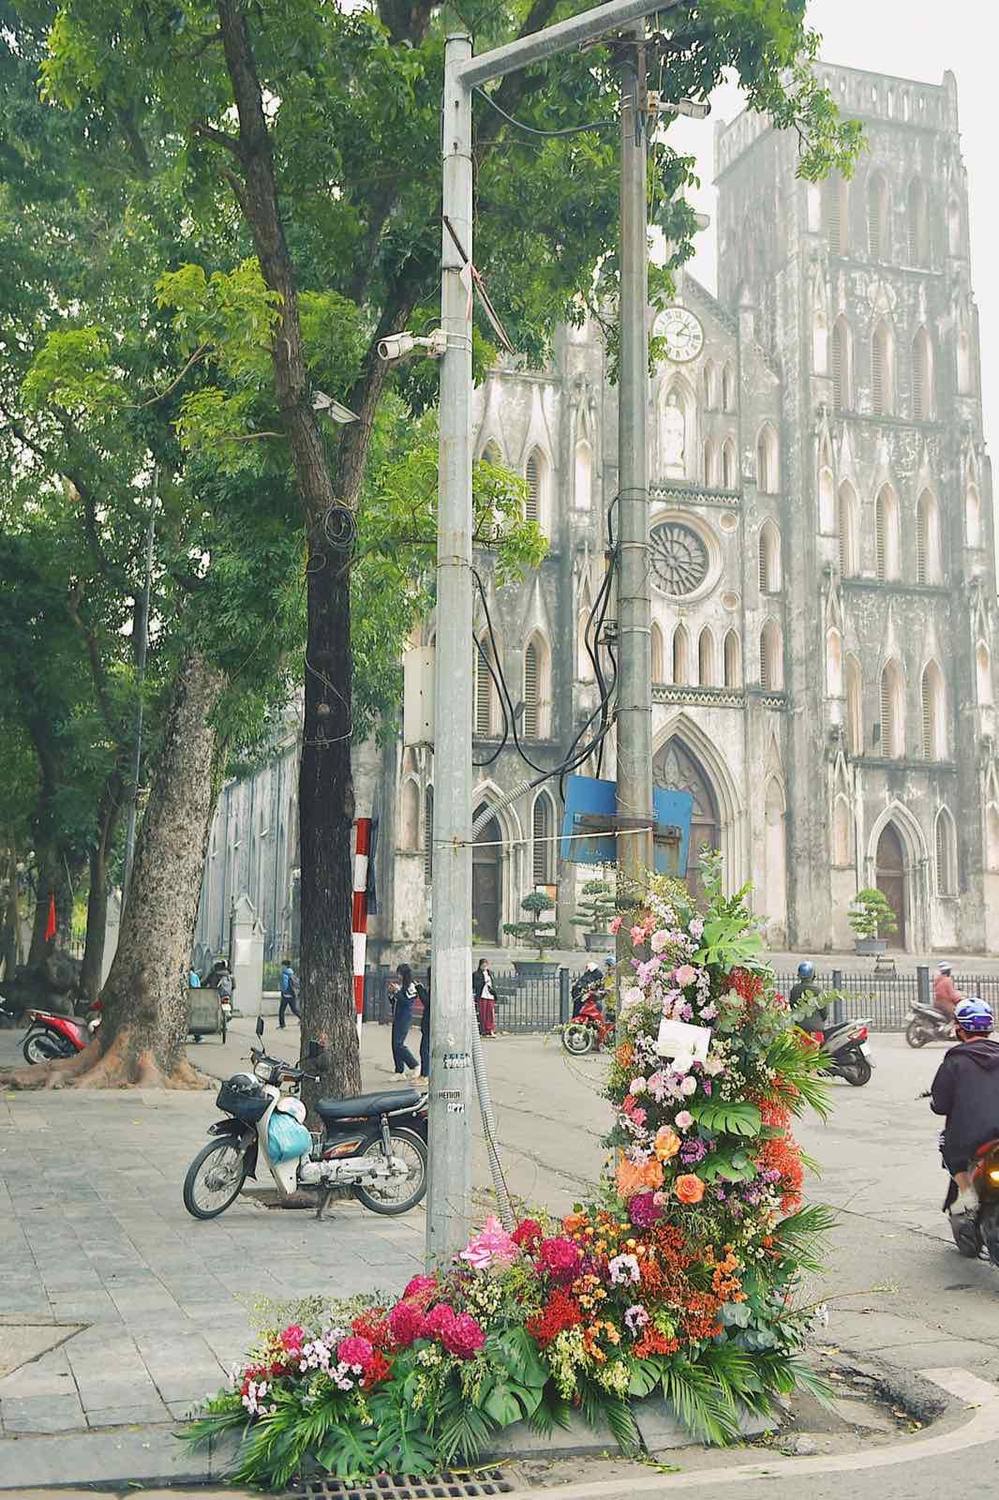  
Cột điện ở khu vực nhà thờ lớn Hà Nội "bung nở" những cánh hoa (Ảnh: Trung tâm tin tức VTV24)